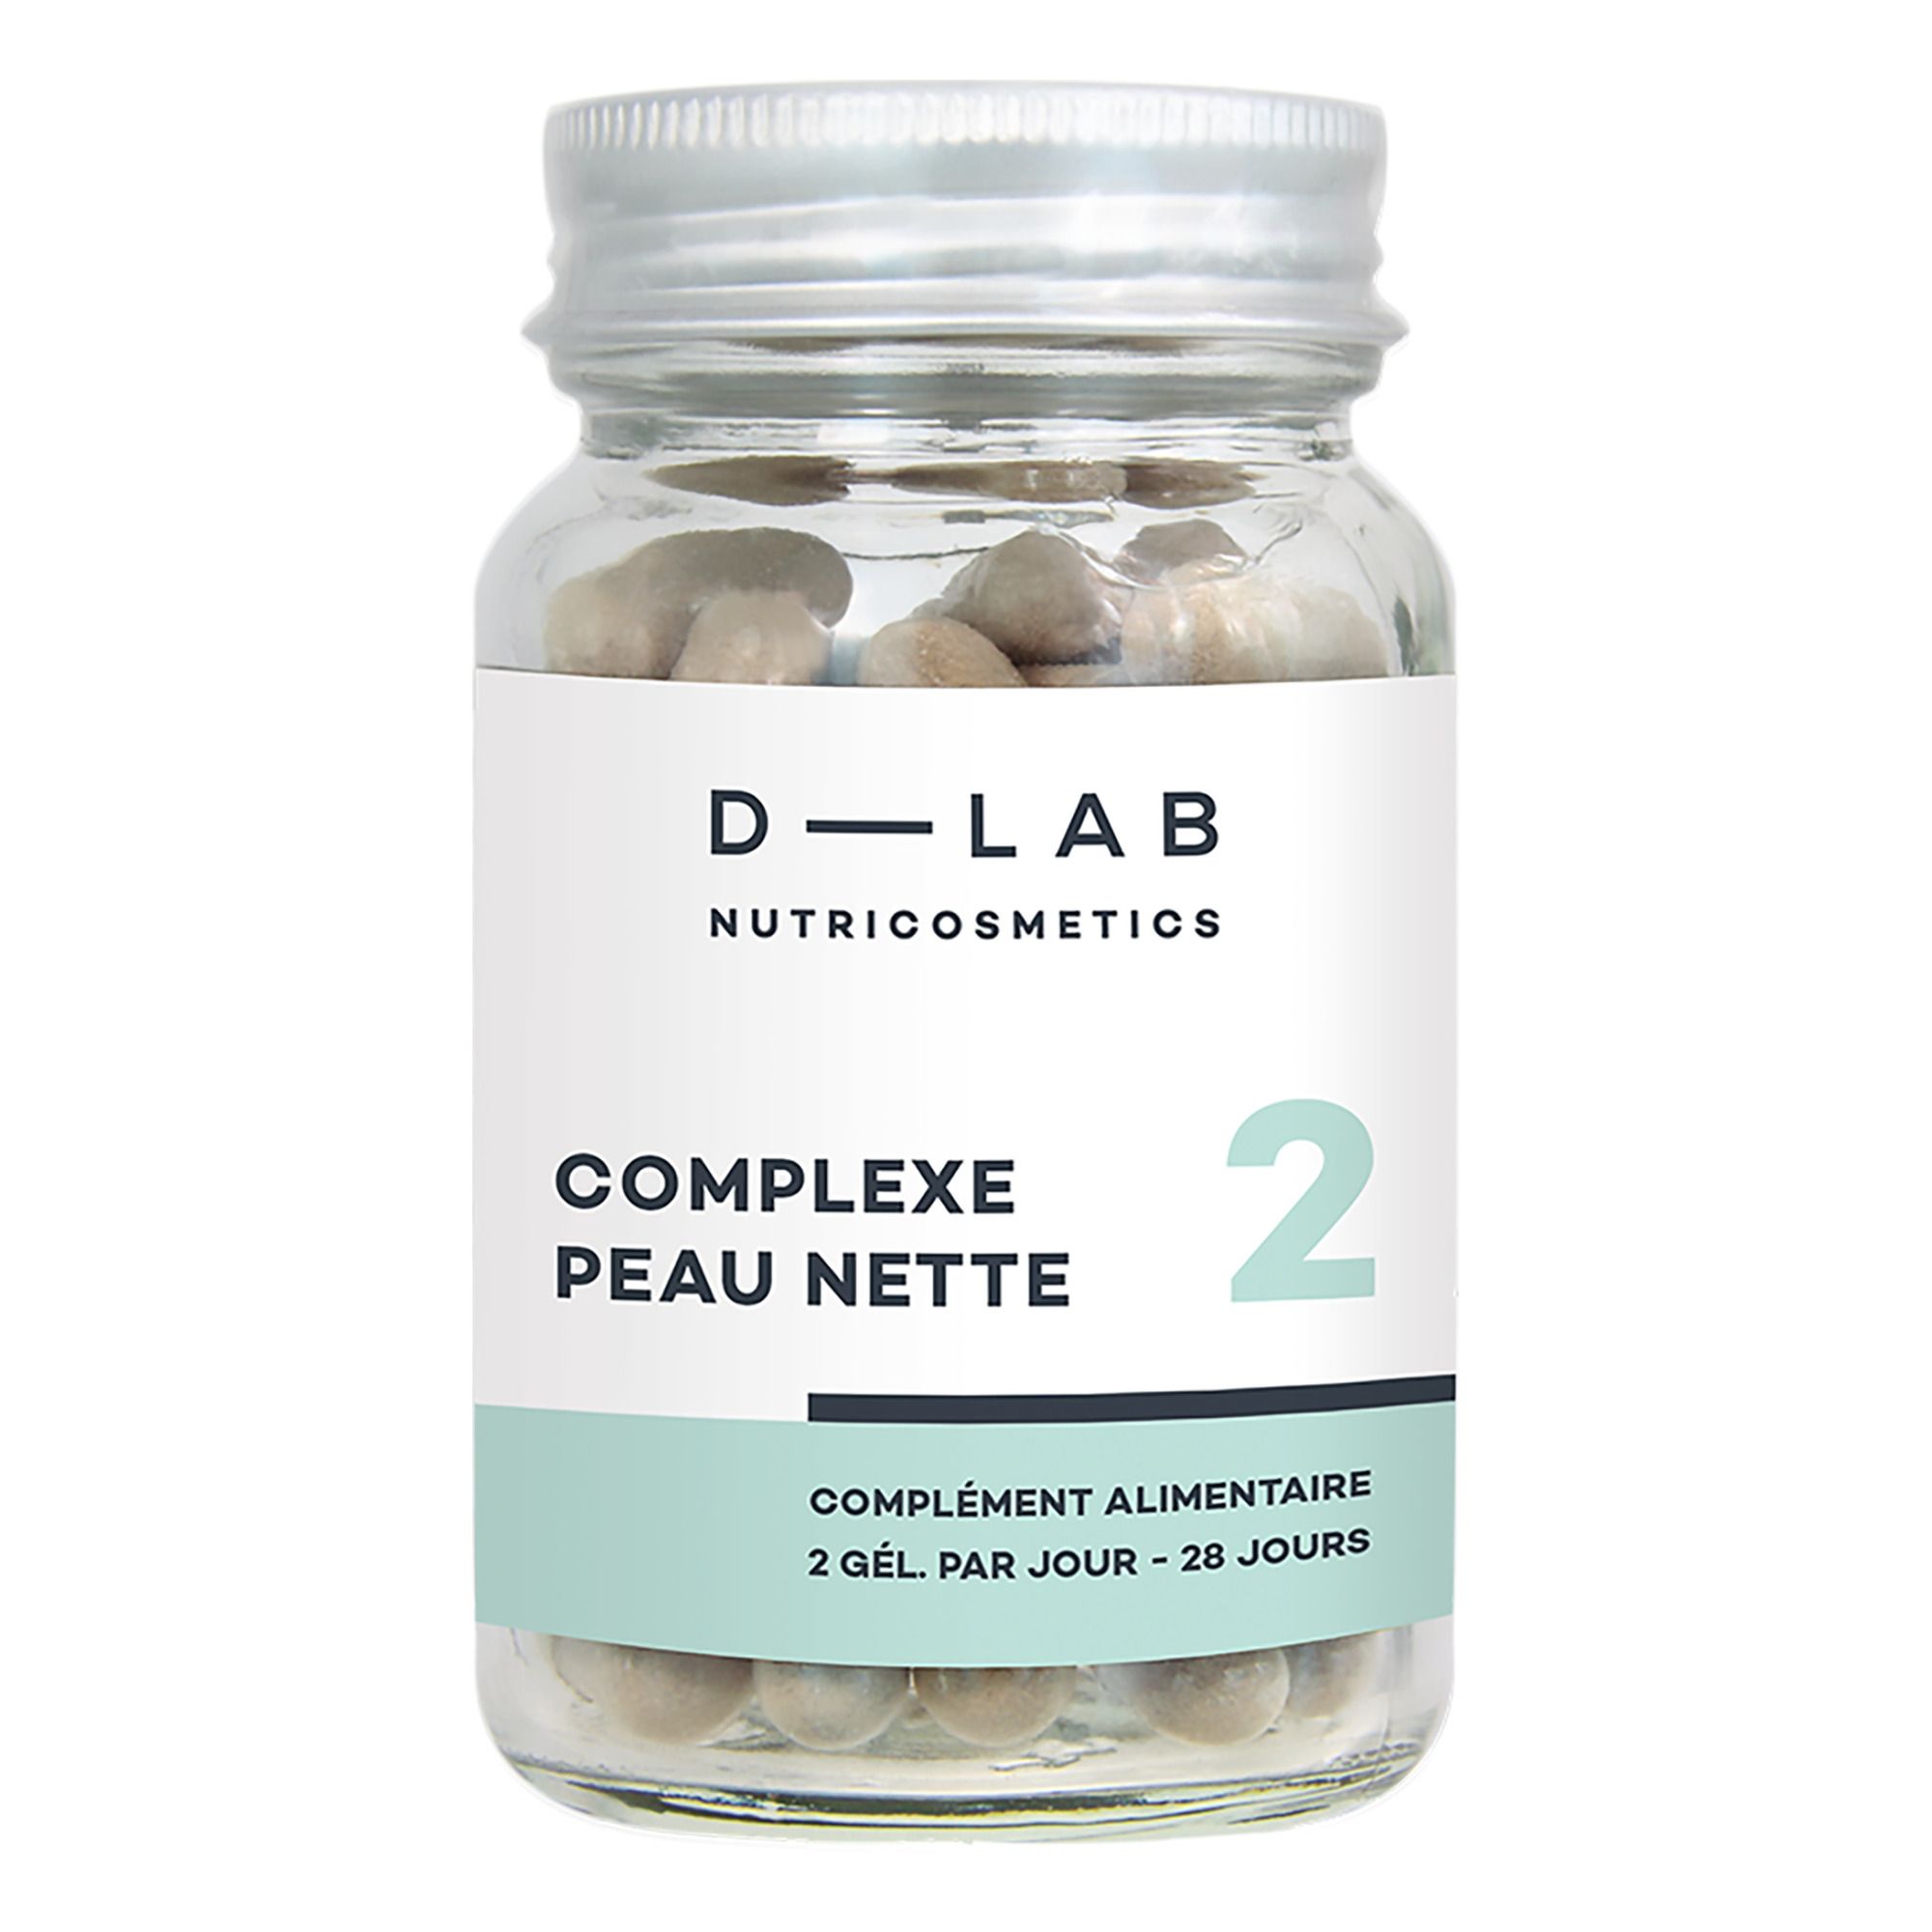 D-LAB NUTRICOSMETICS - Complexe Peau Nette - 1 mois - Blanc